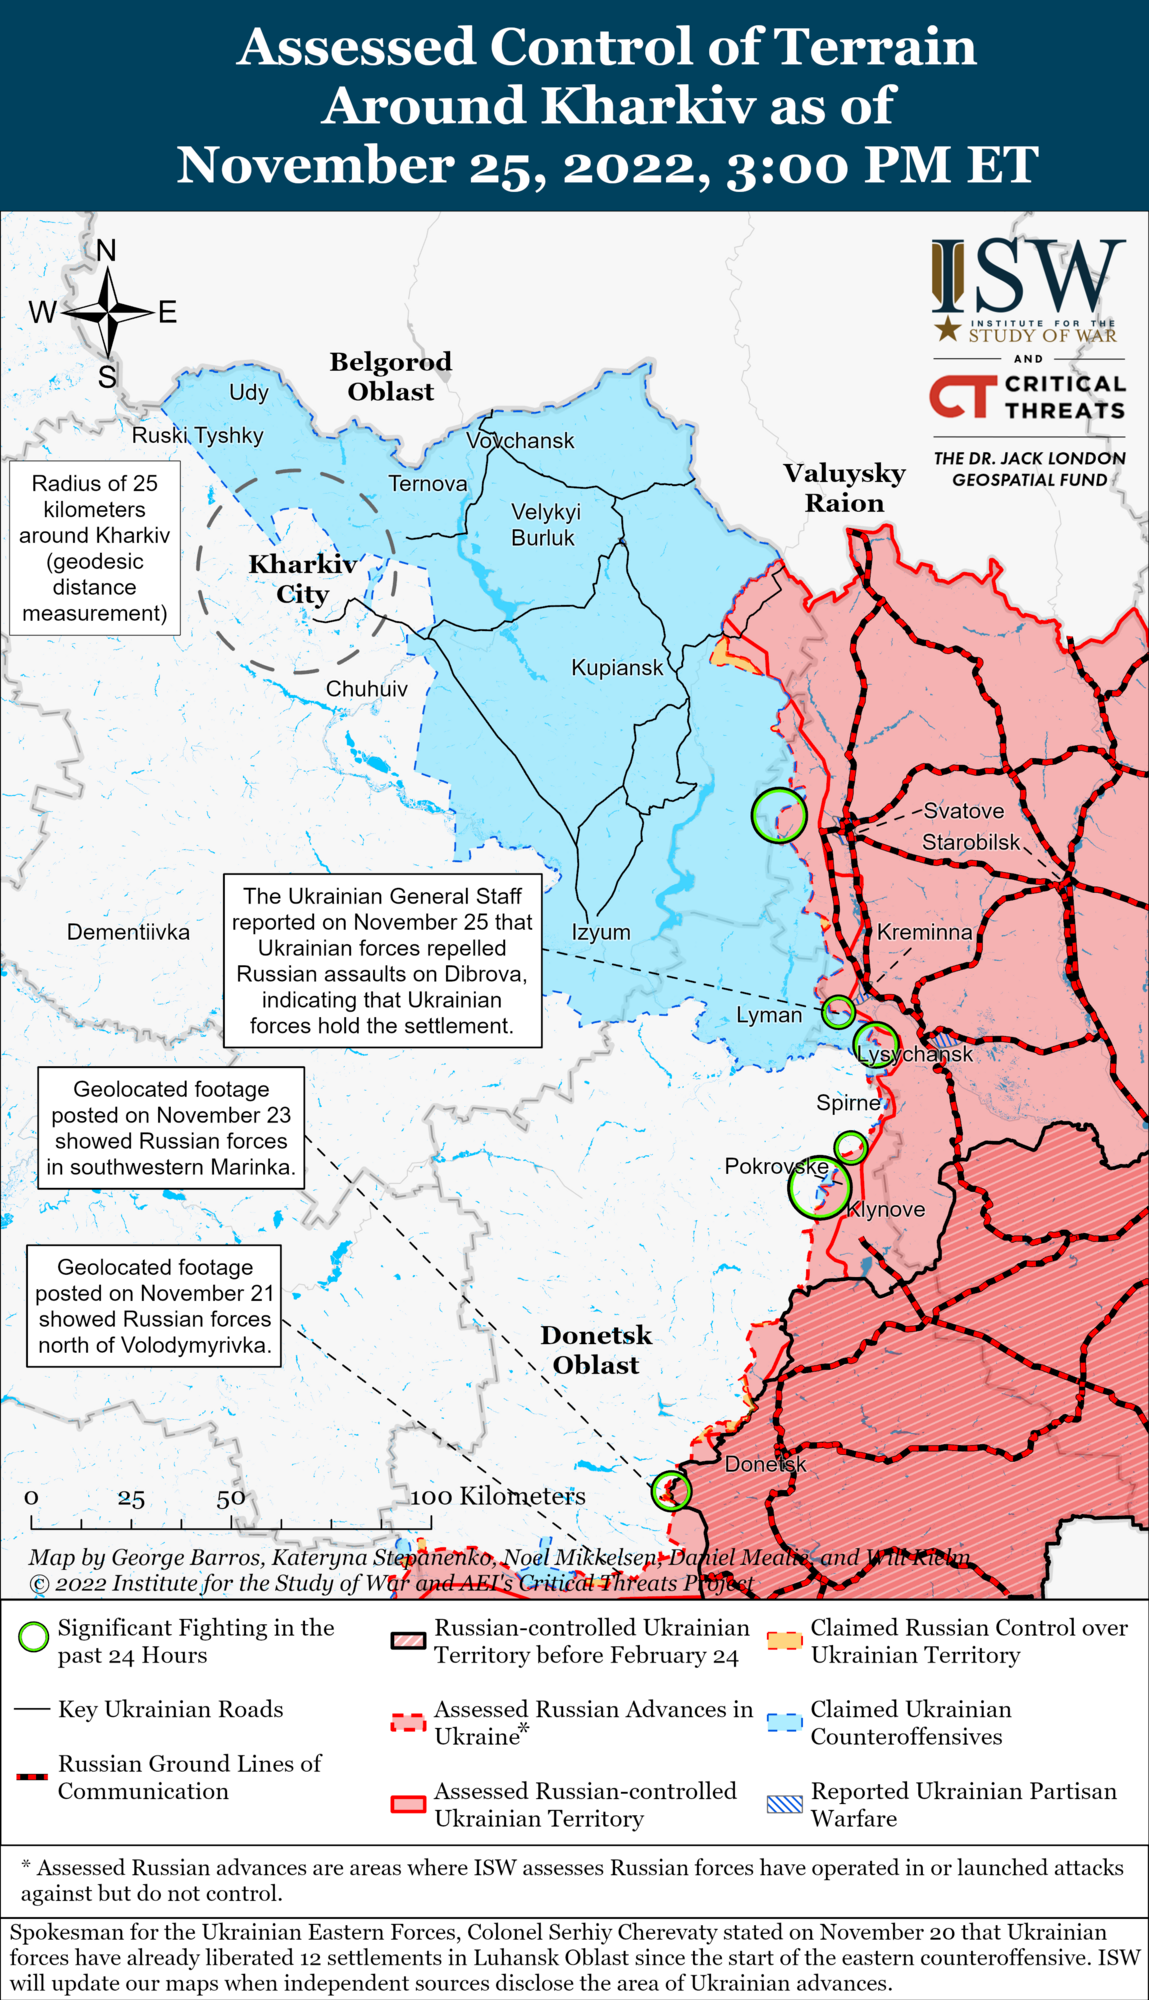 Войска РФ проводят контратаки около Сватово, а ВСУ атакуют врага возле Кременной: анализ боевых действий от ISW